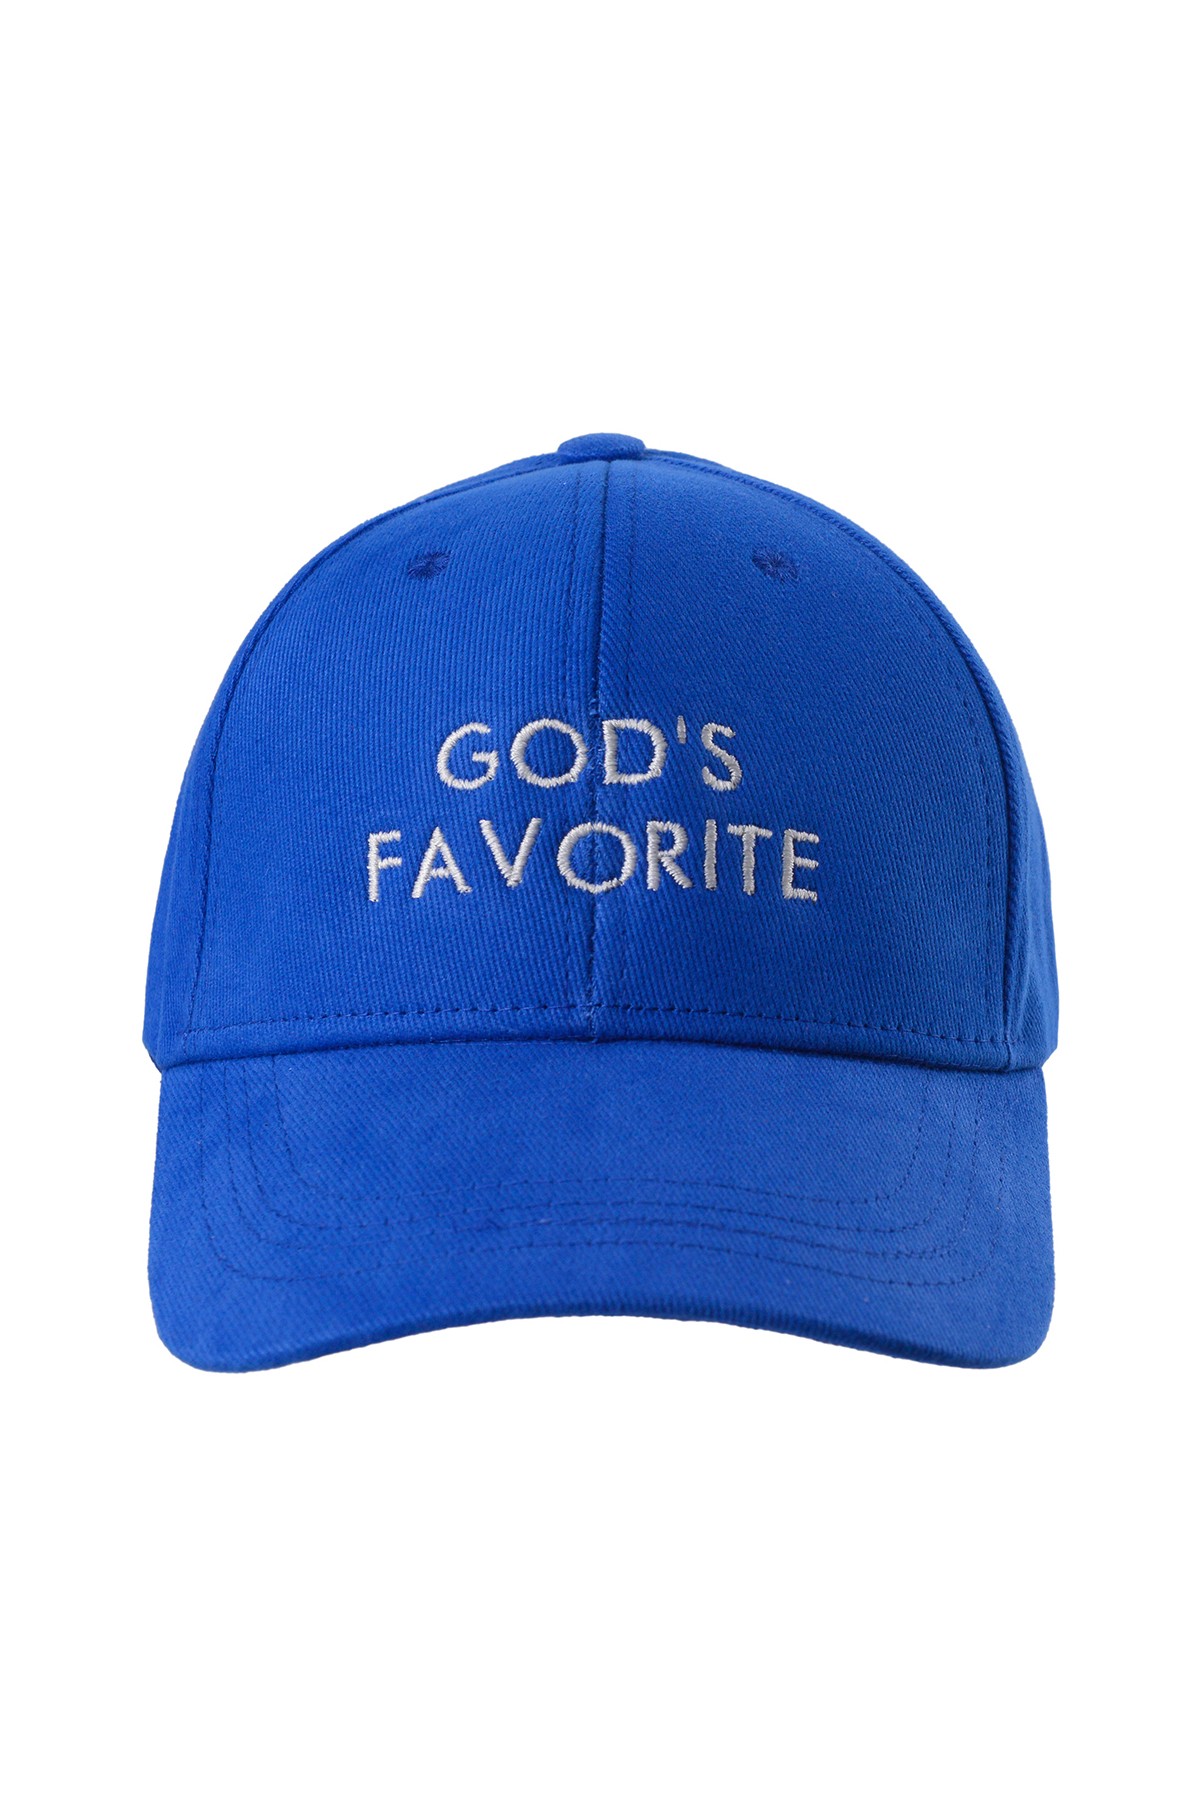 GOD'S FAVORITE CAP